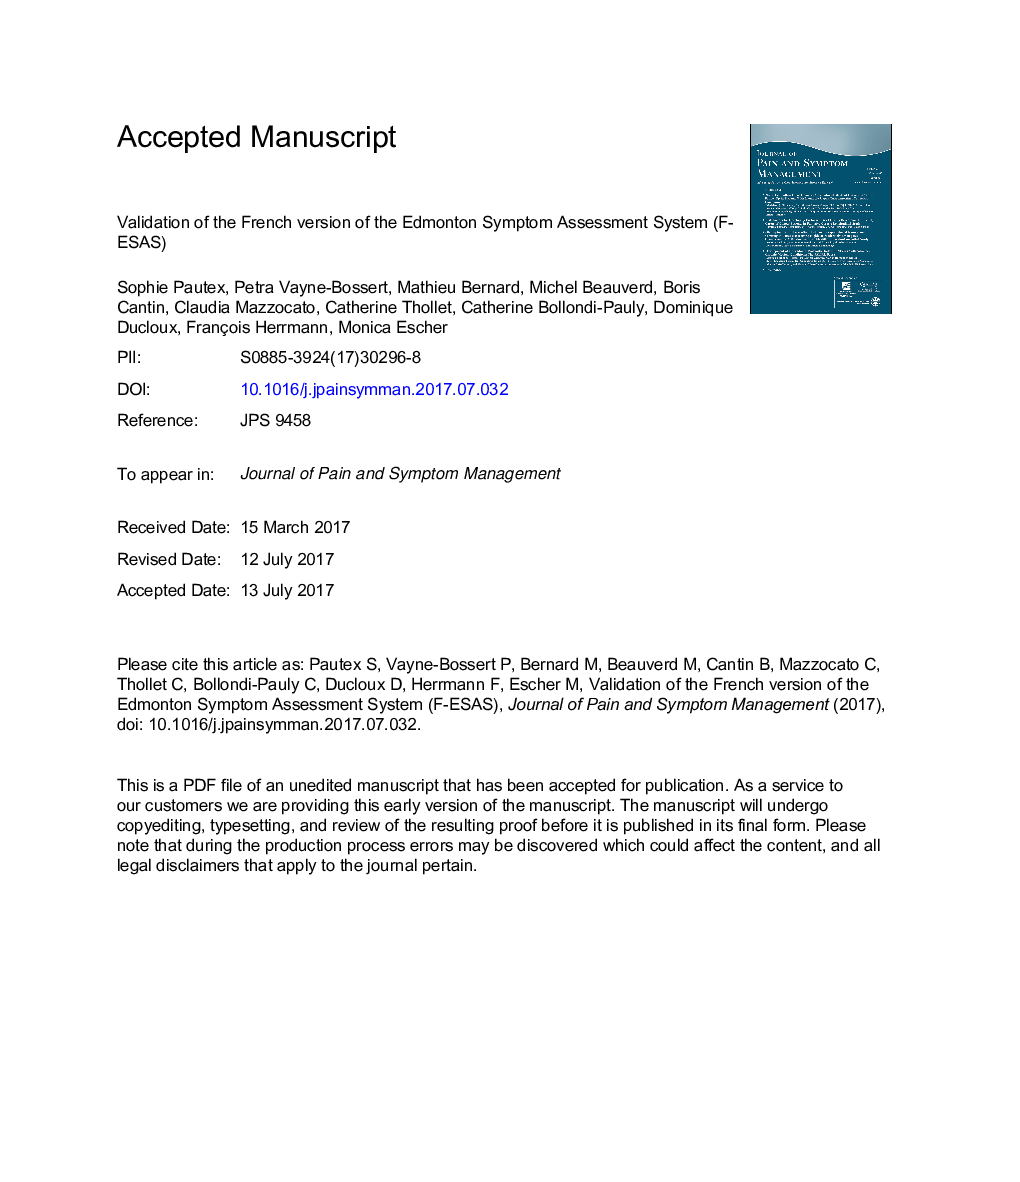 اعتبار نسخه فرانسوی سیستم ارزیابی علائم ادمونتون 